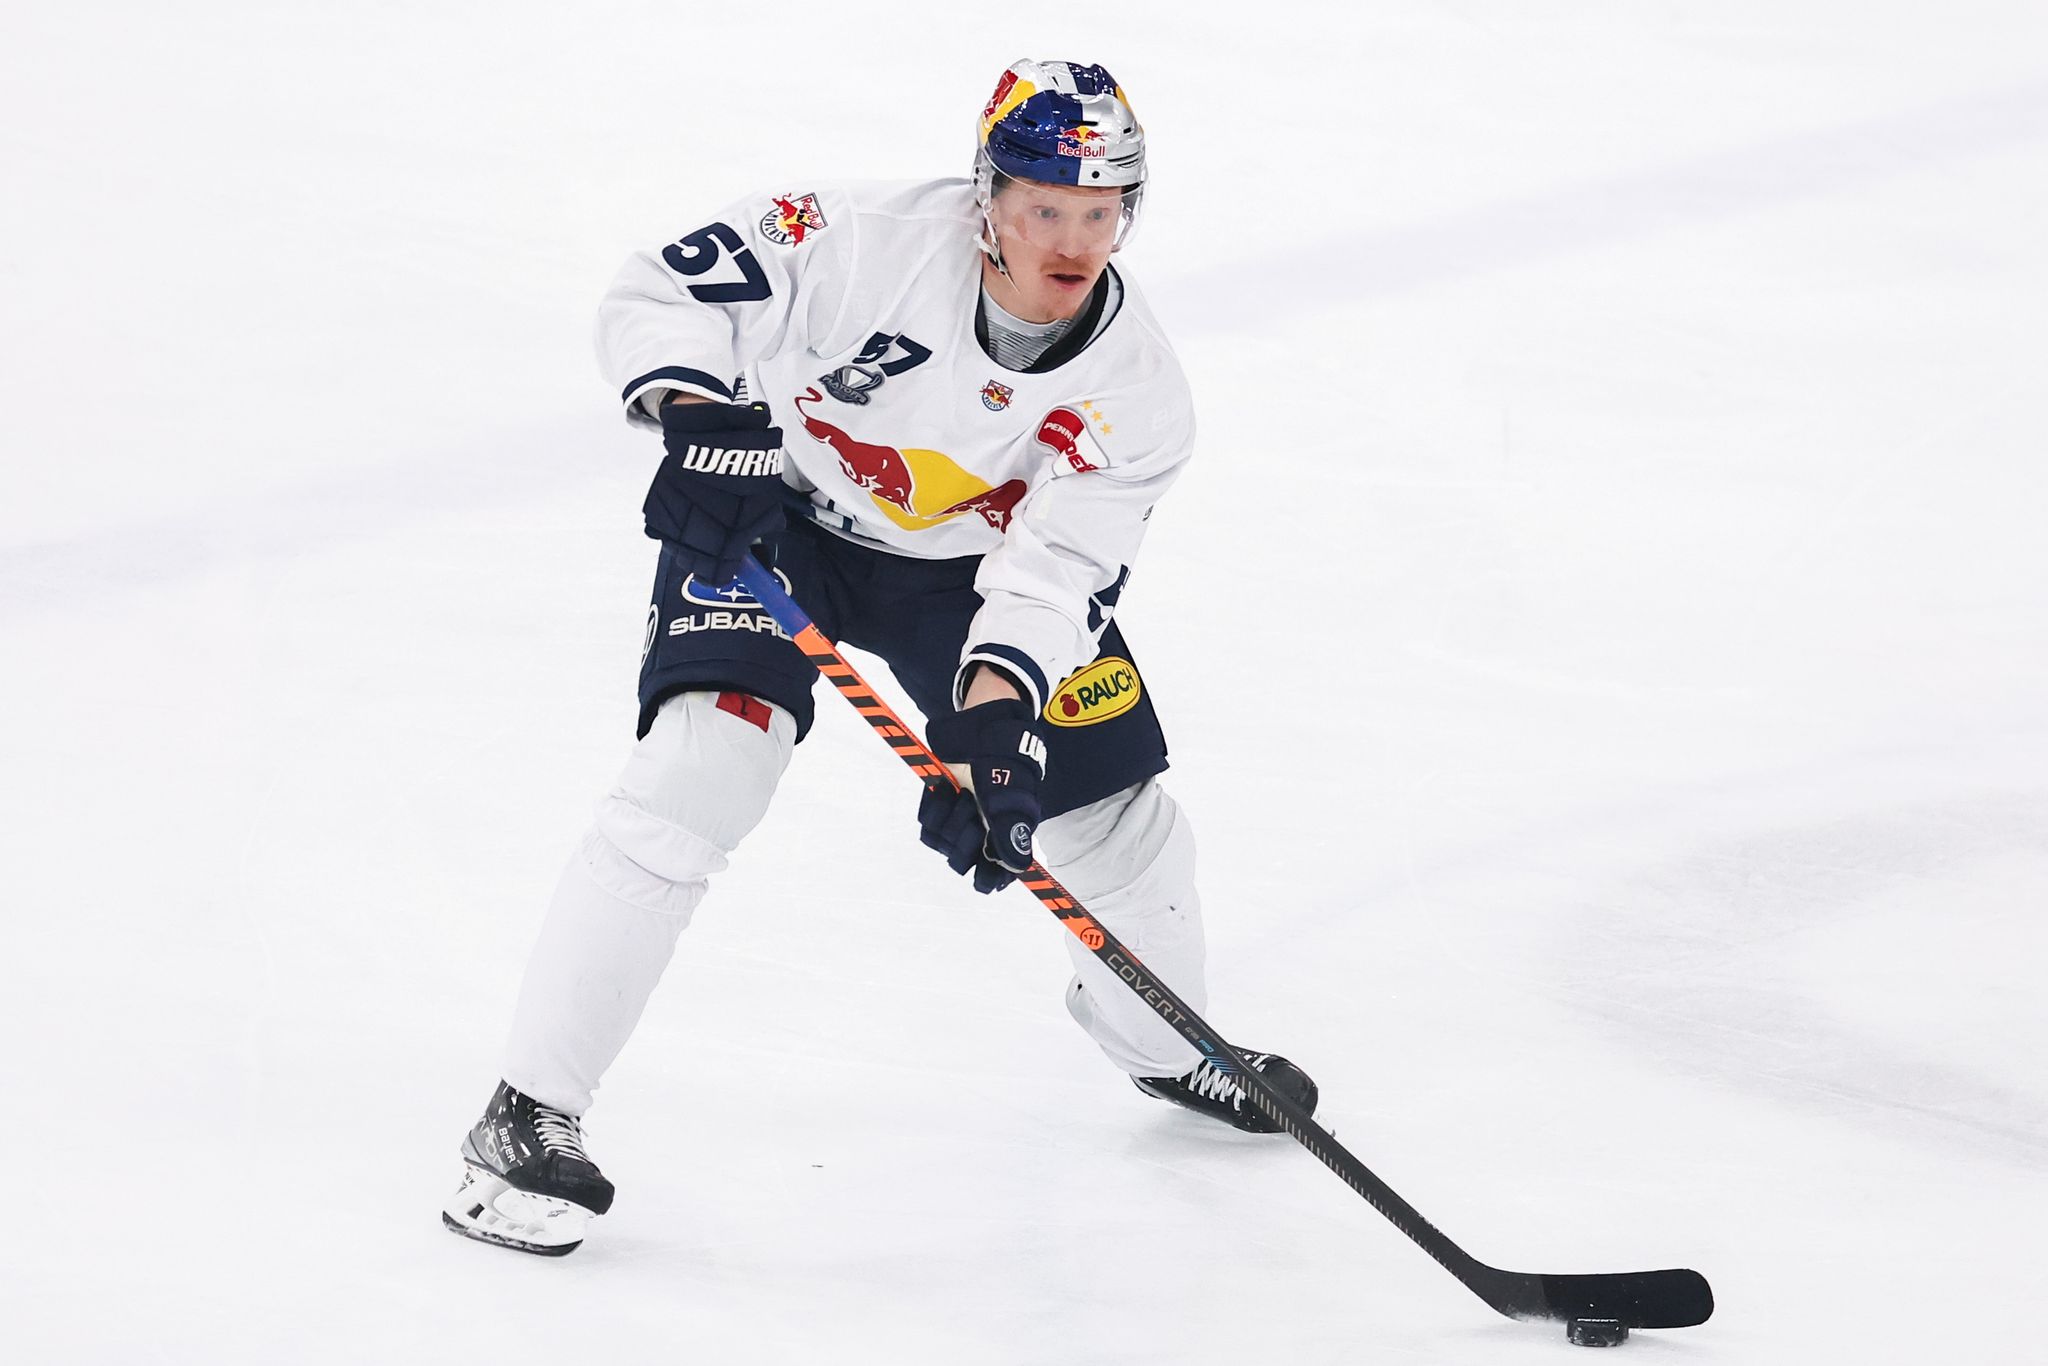 eishockey-profi johansson kehrt nach münchen zurück